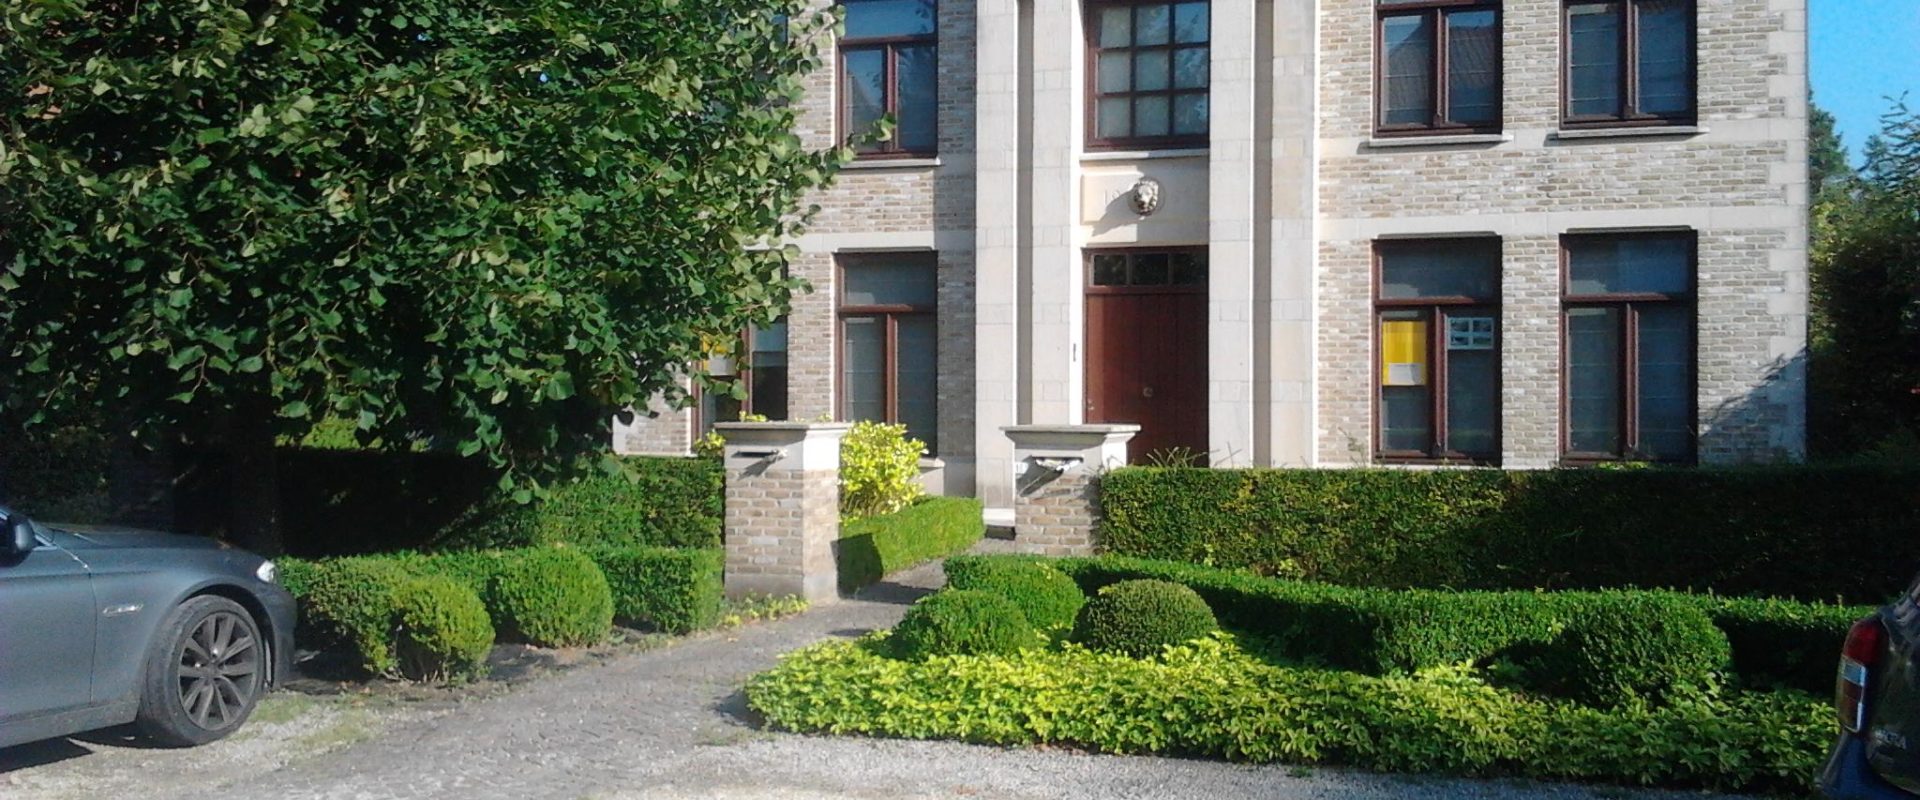 Luxevastgoed Kortrijk – luxevilla te koop